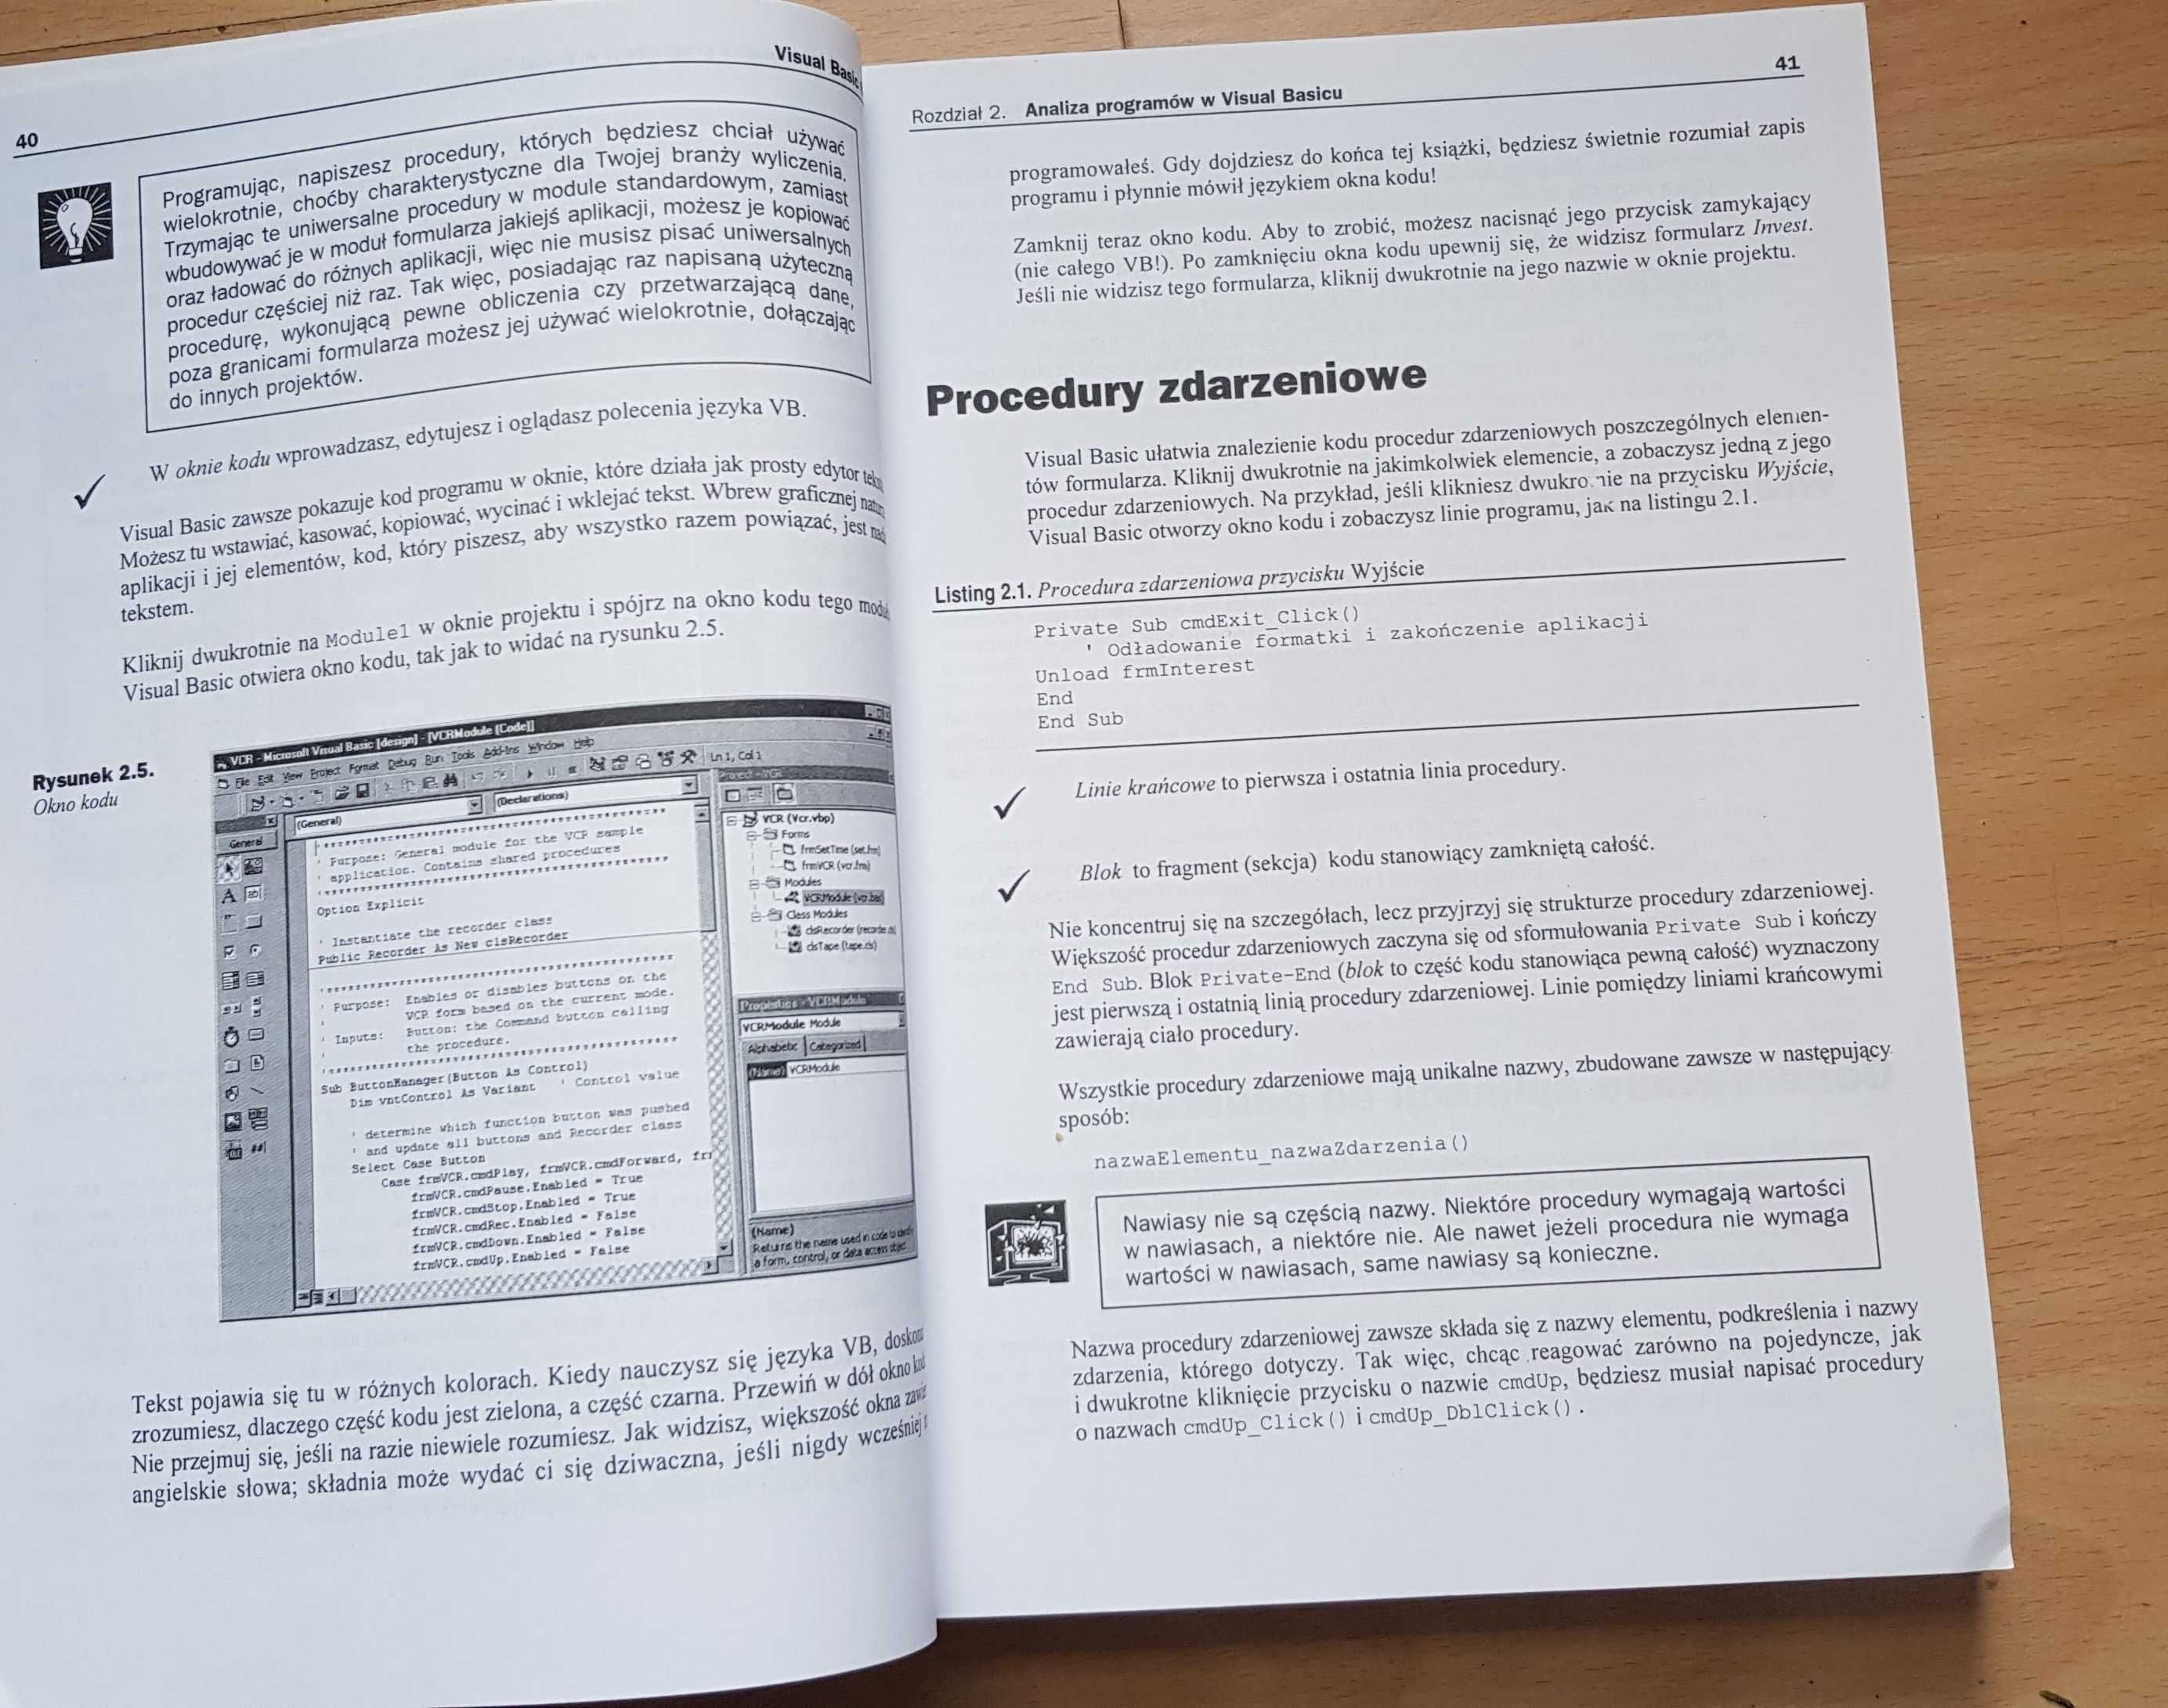 Książka Visual Basic programowanie - Greg Perry /Helion